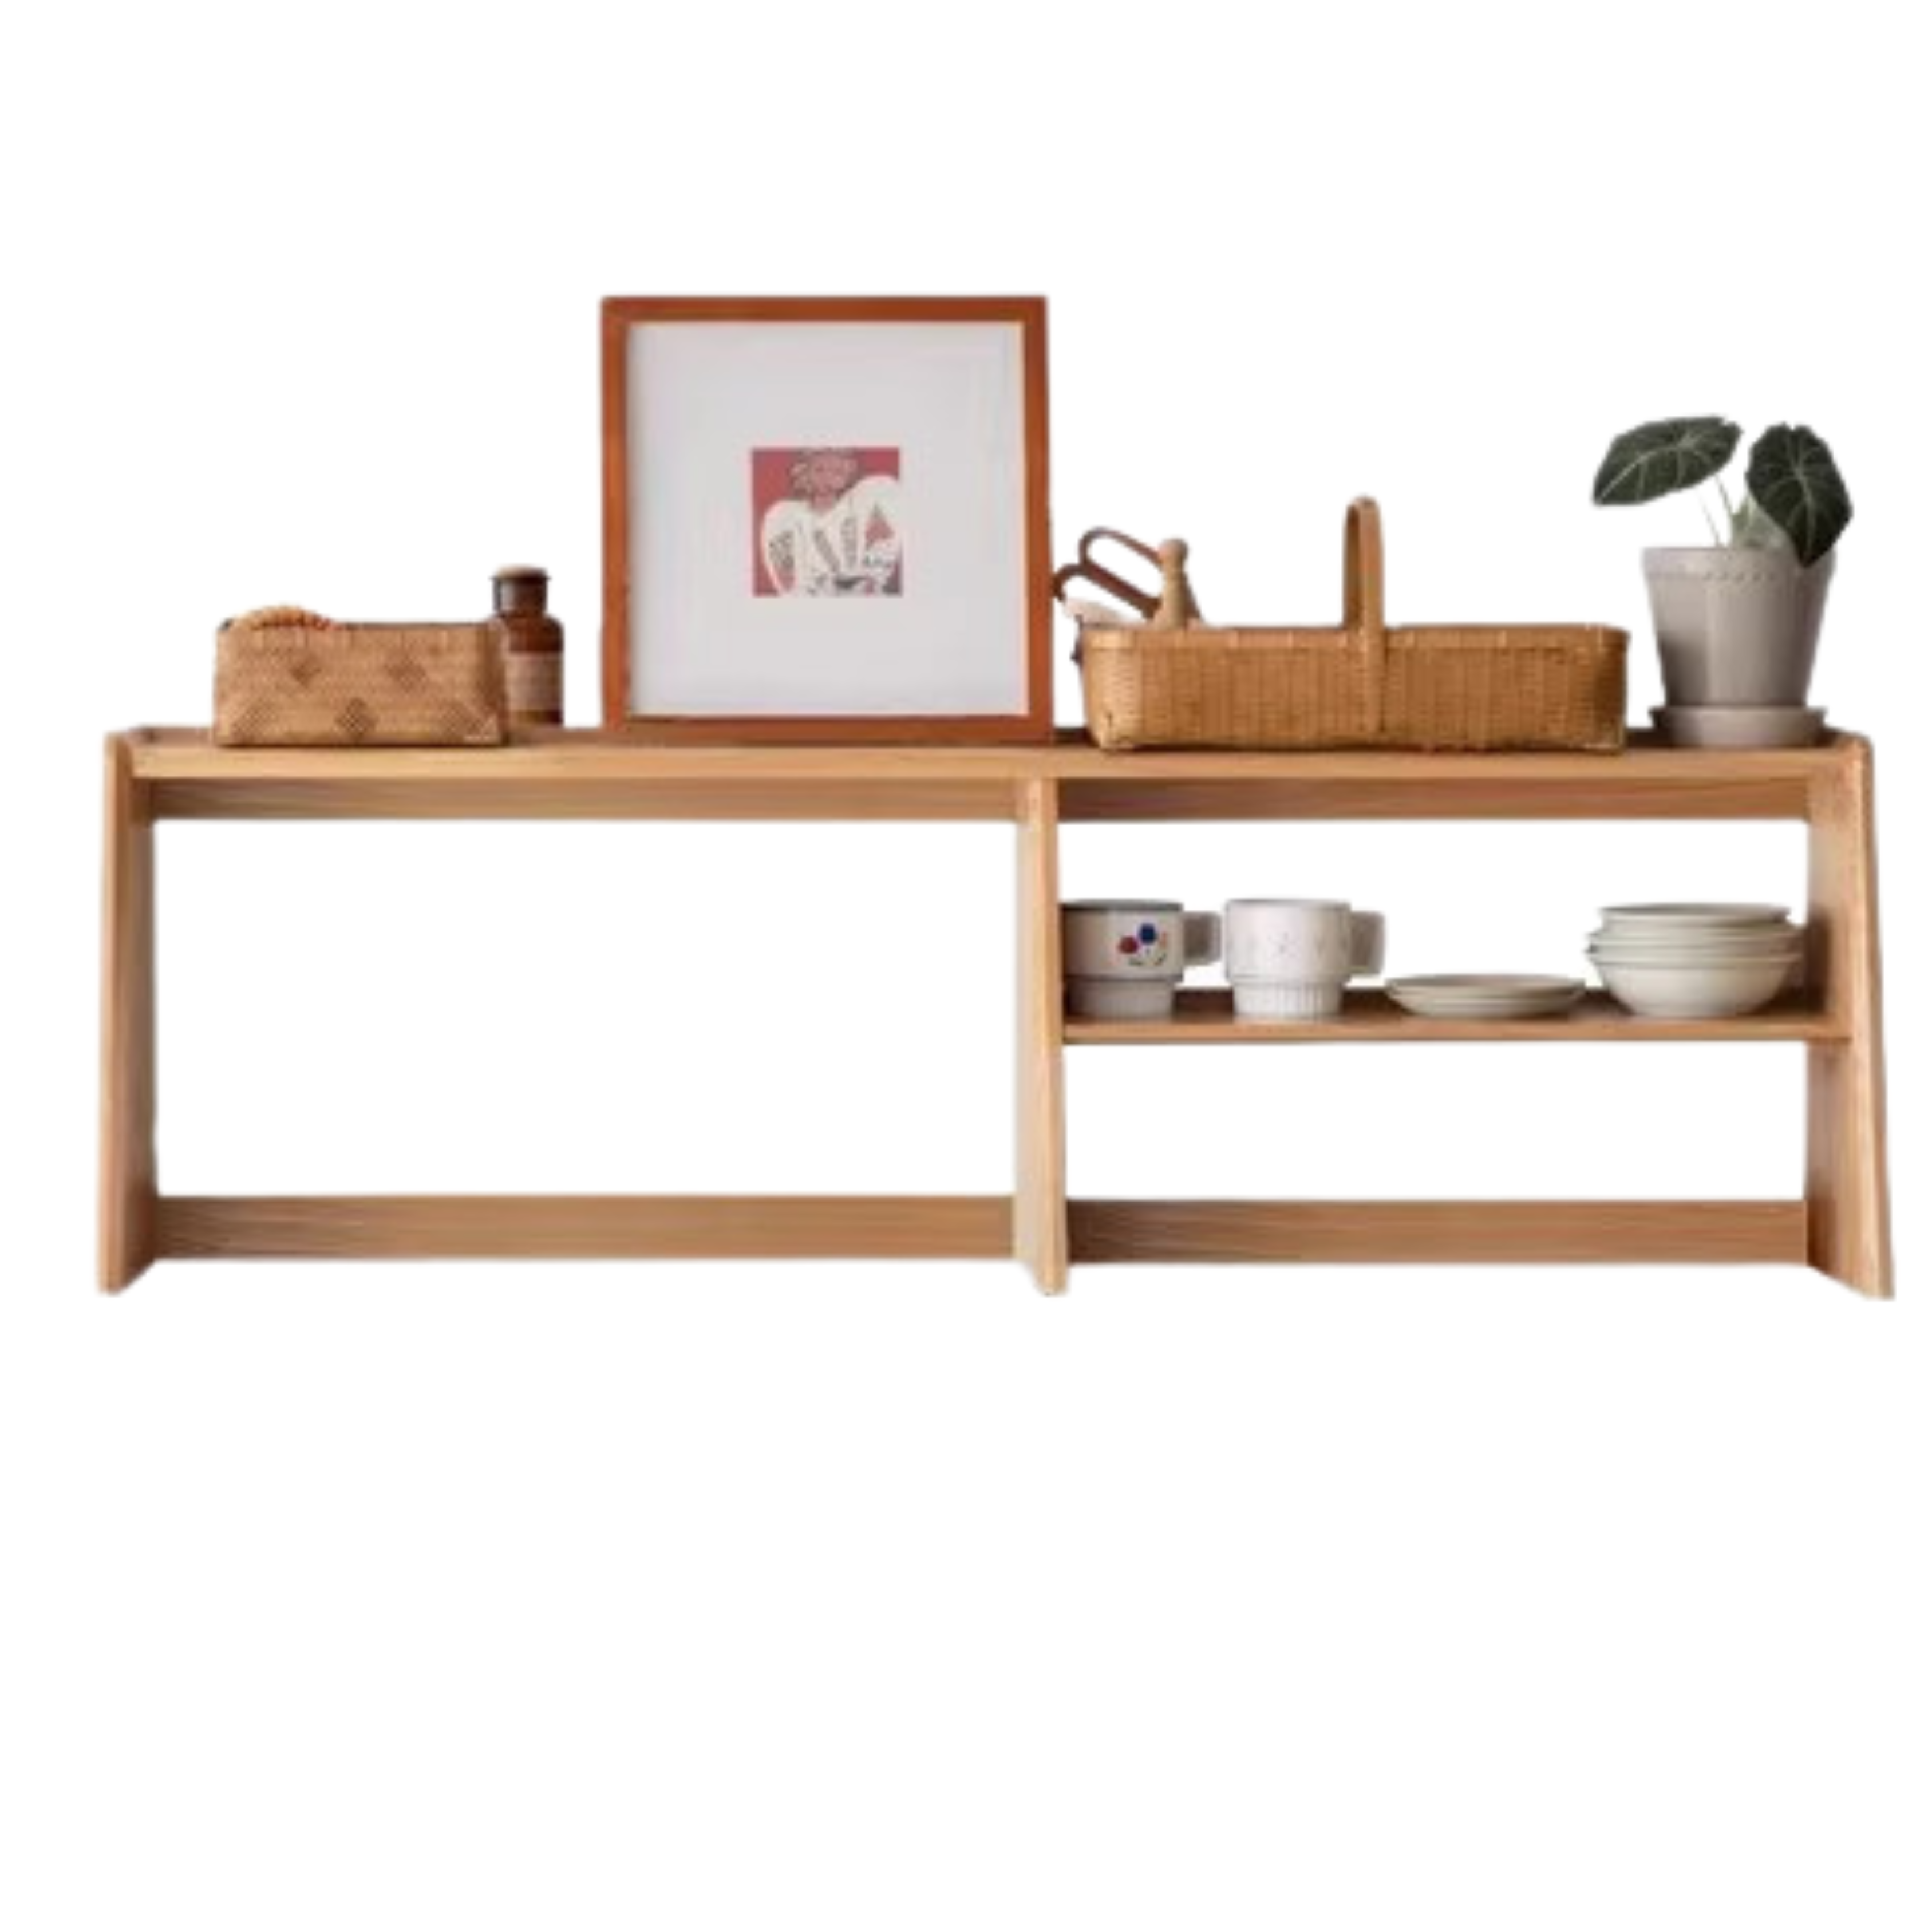 Sideboard shelf , kitchen shelf oak solid wood